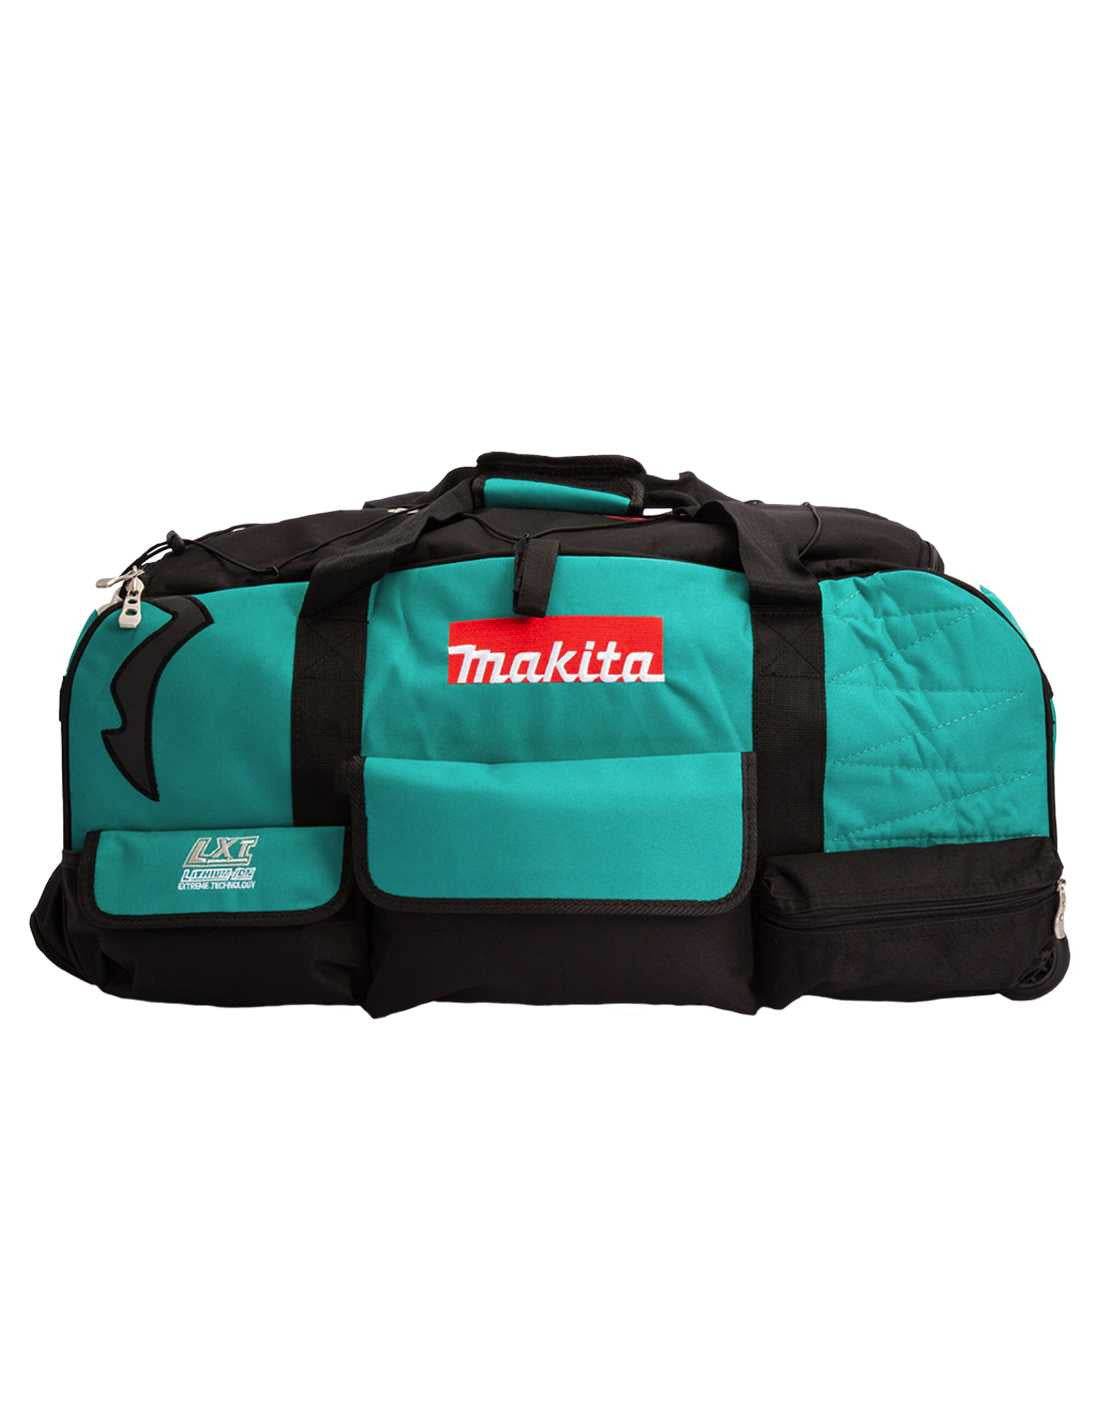 Kit Makita avec 10 outils + 3 batteries 3ah + chargeur + 2 sacs DLX1080BL3